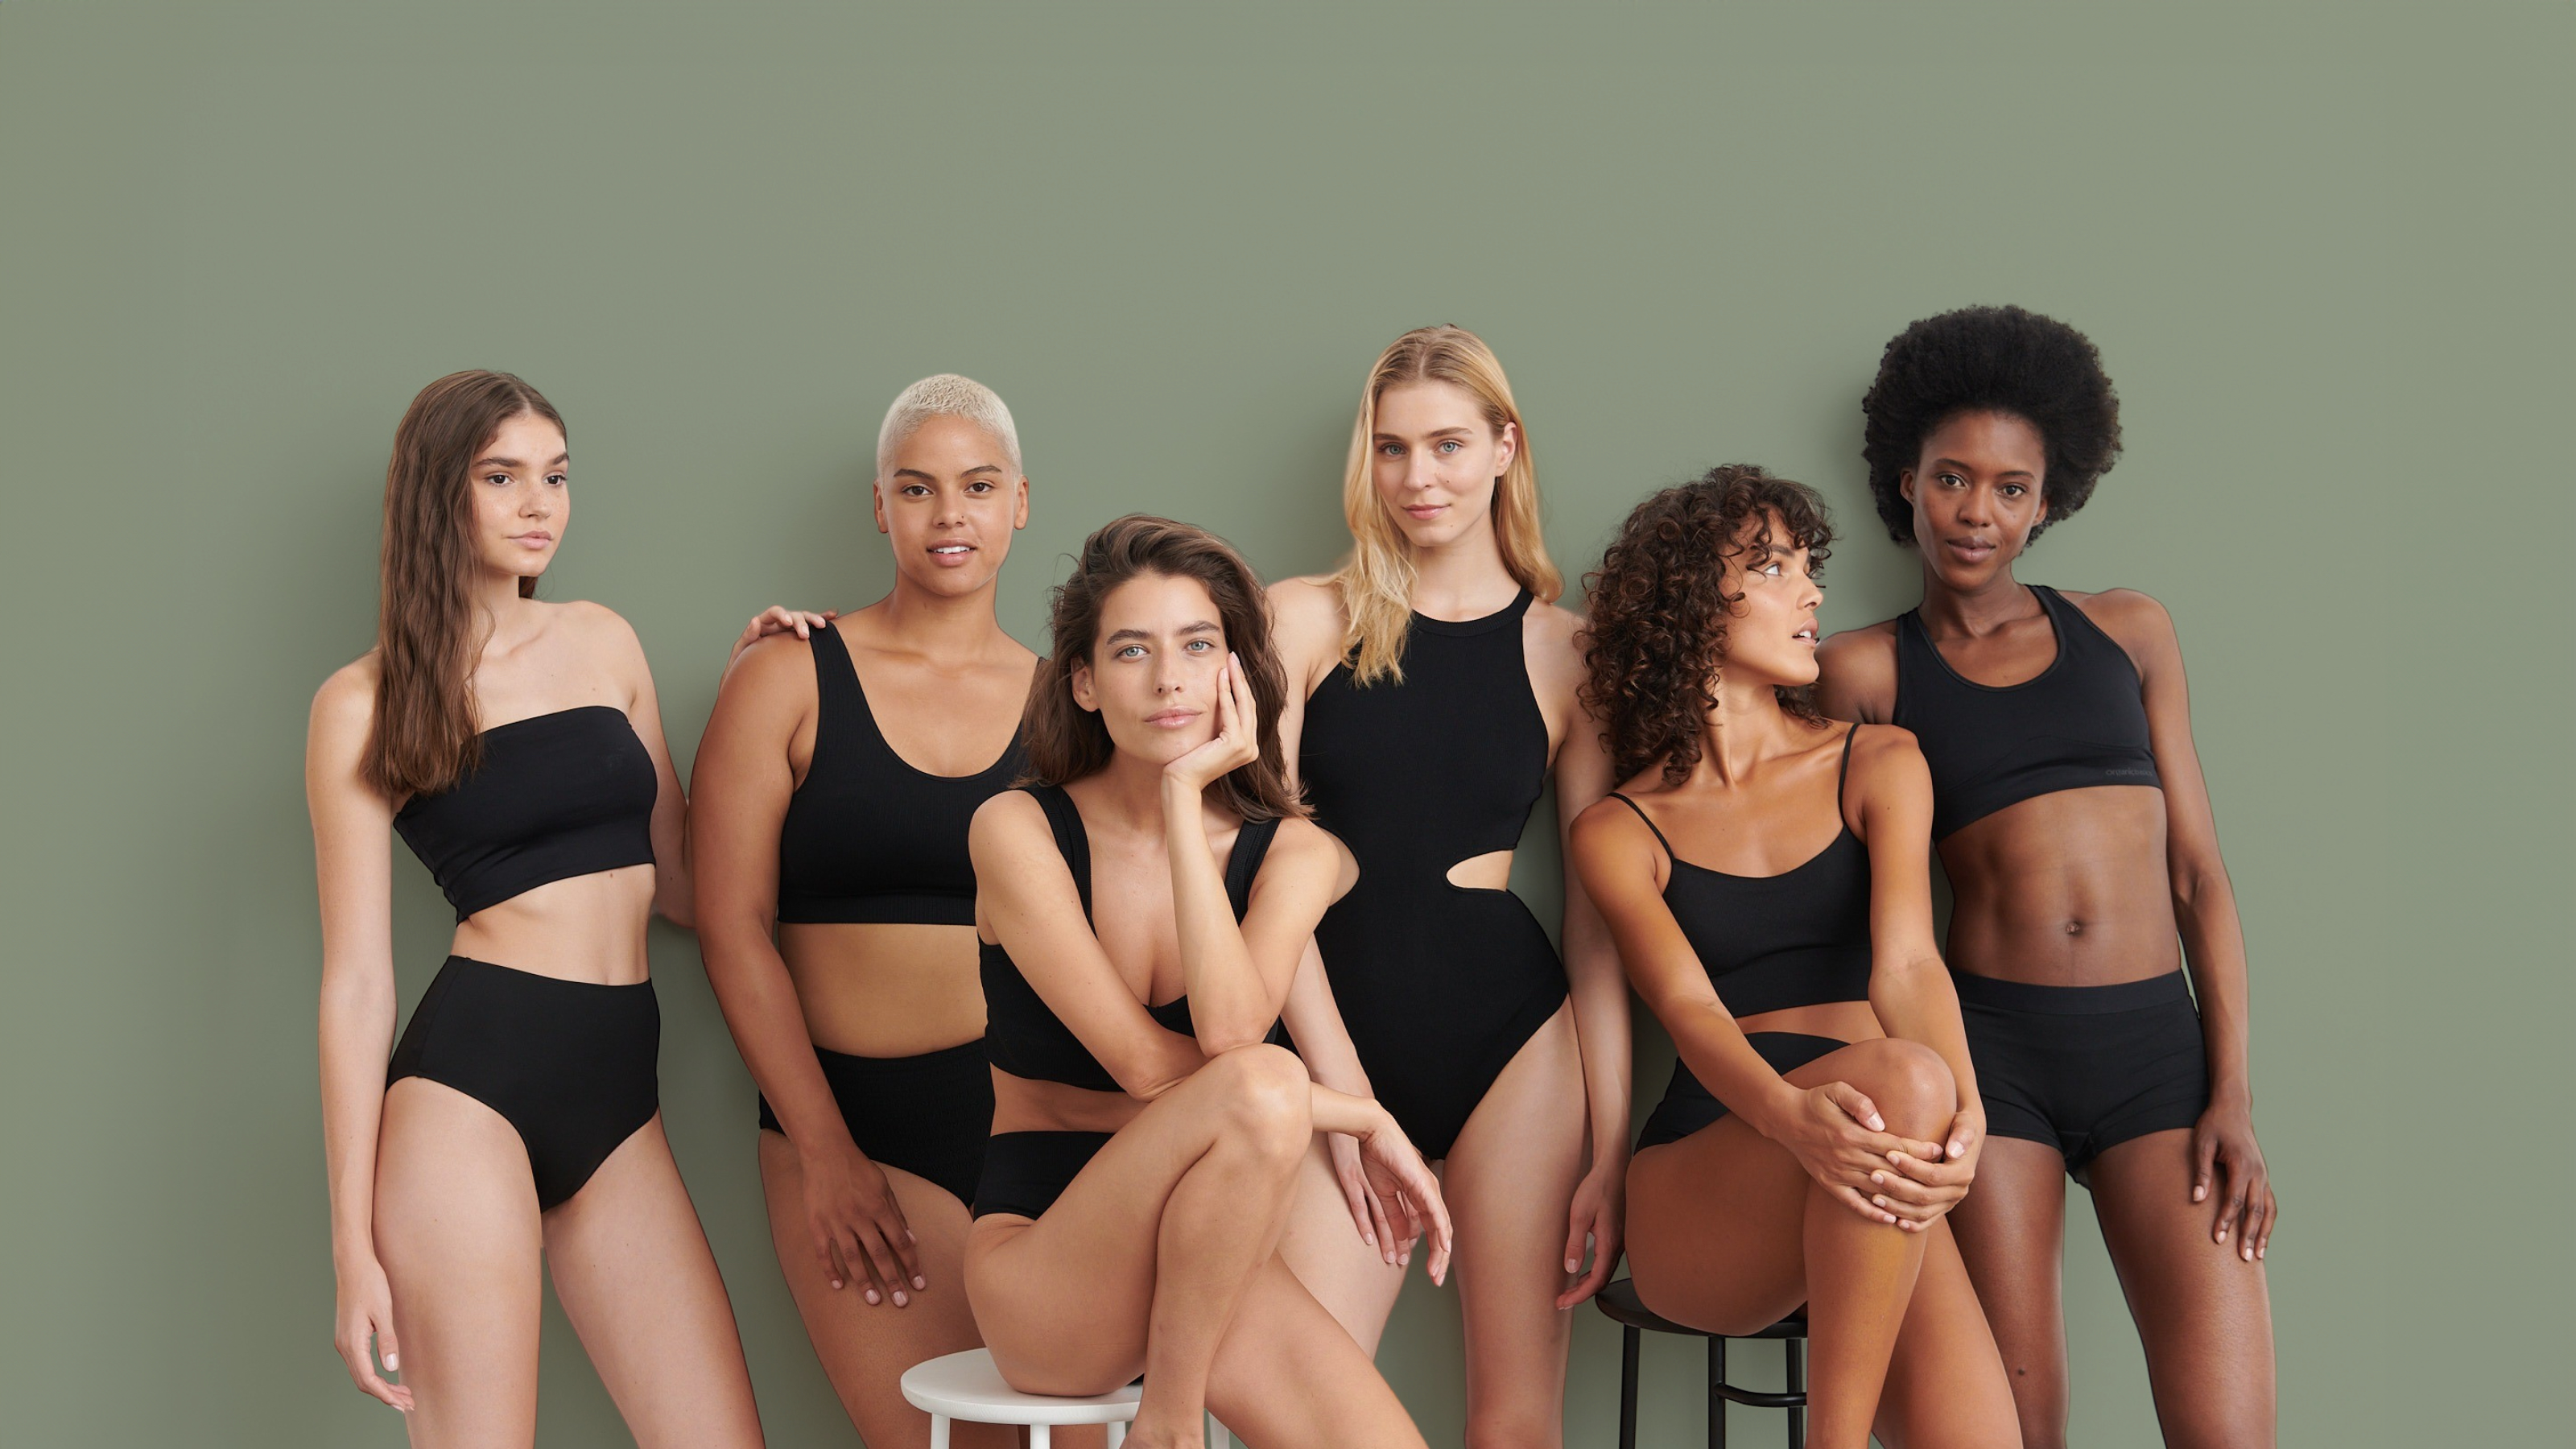 Siyah, sportif bikiniler giymiş, oturur ve ayakta durur konumda altı kadından oluşan bir grup.